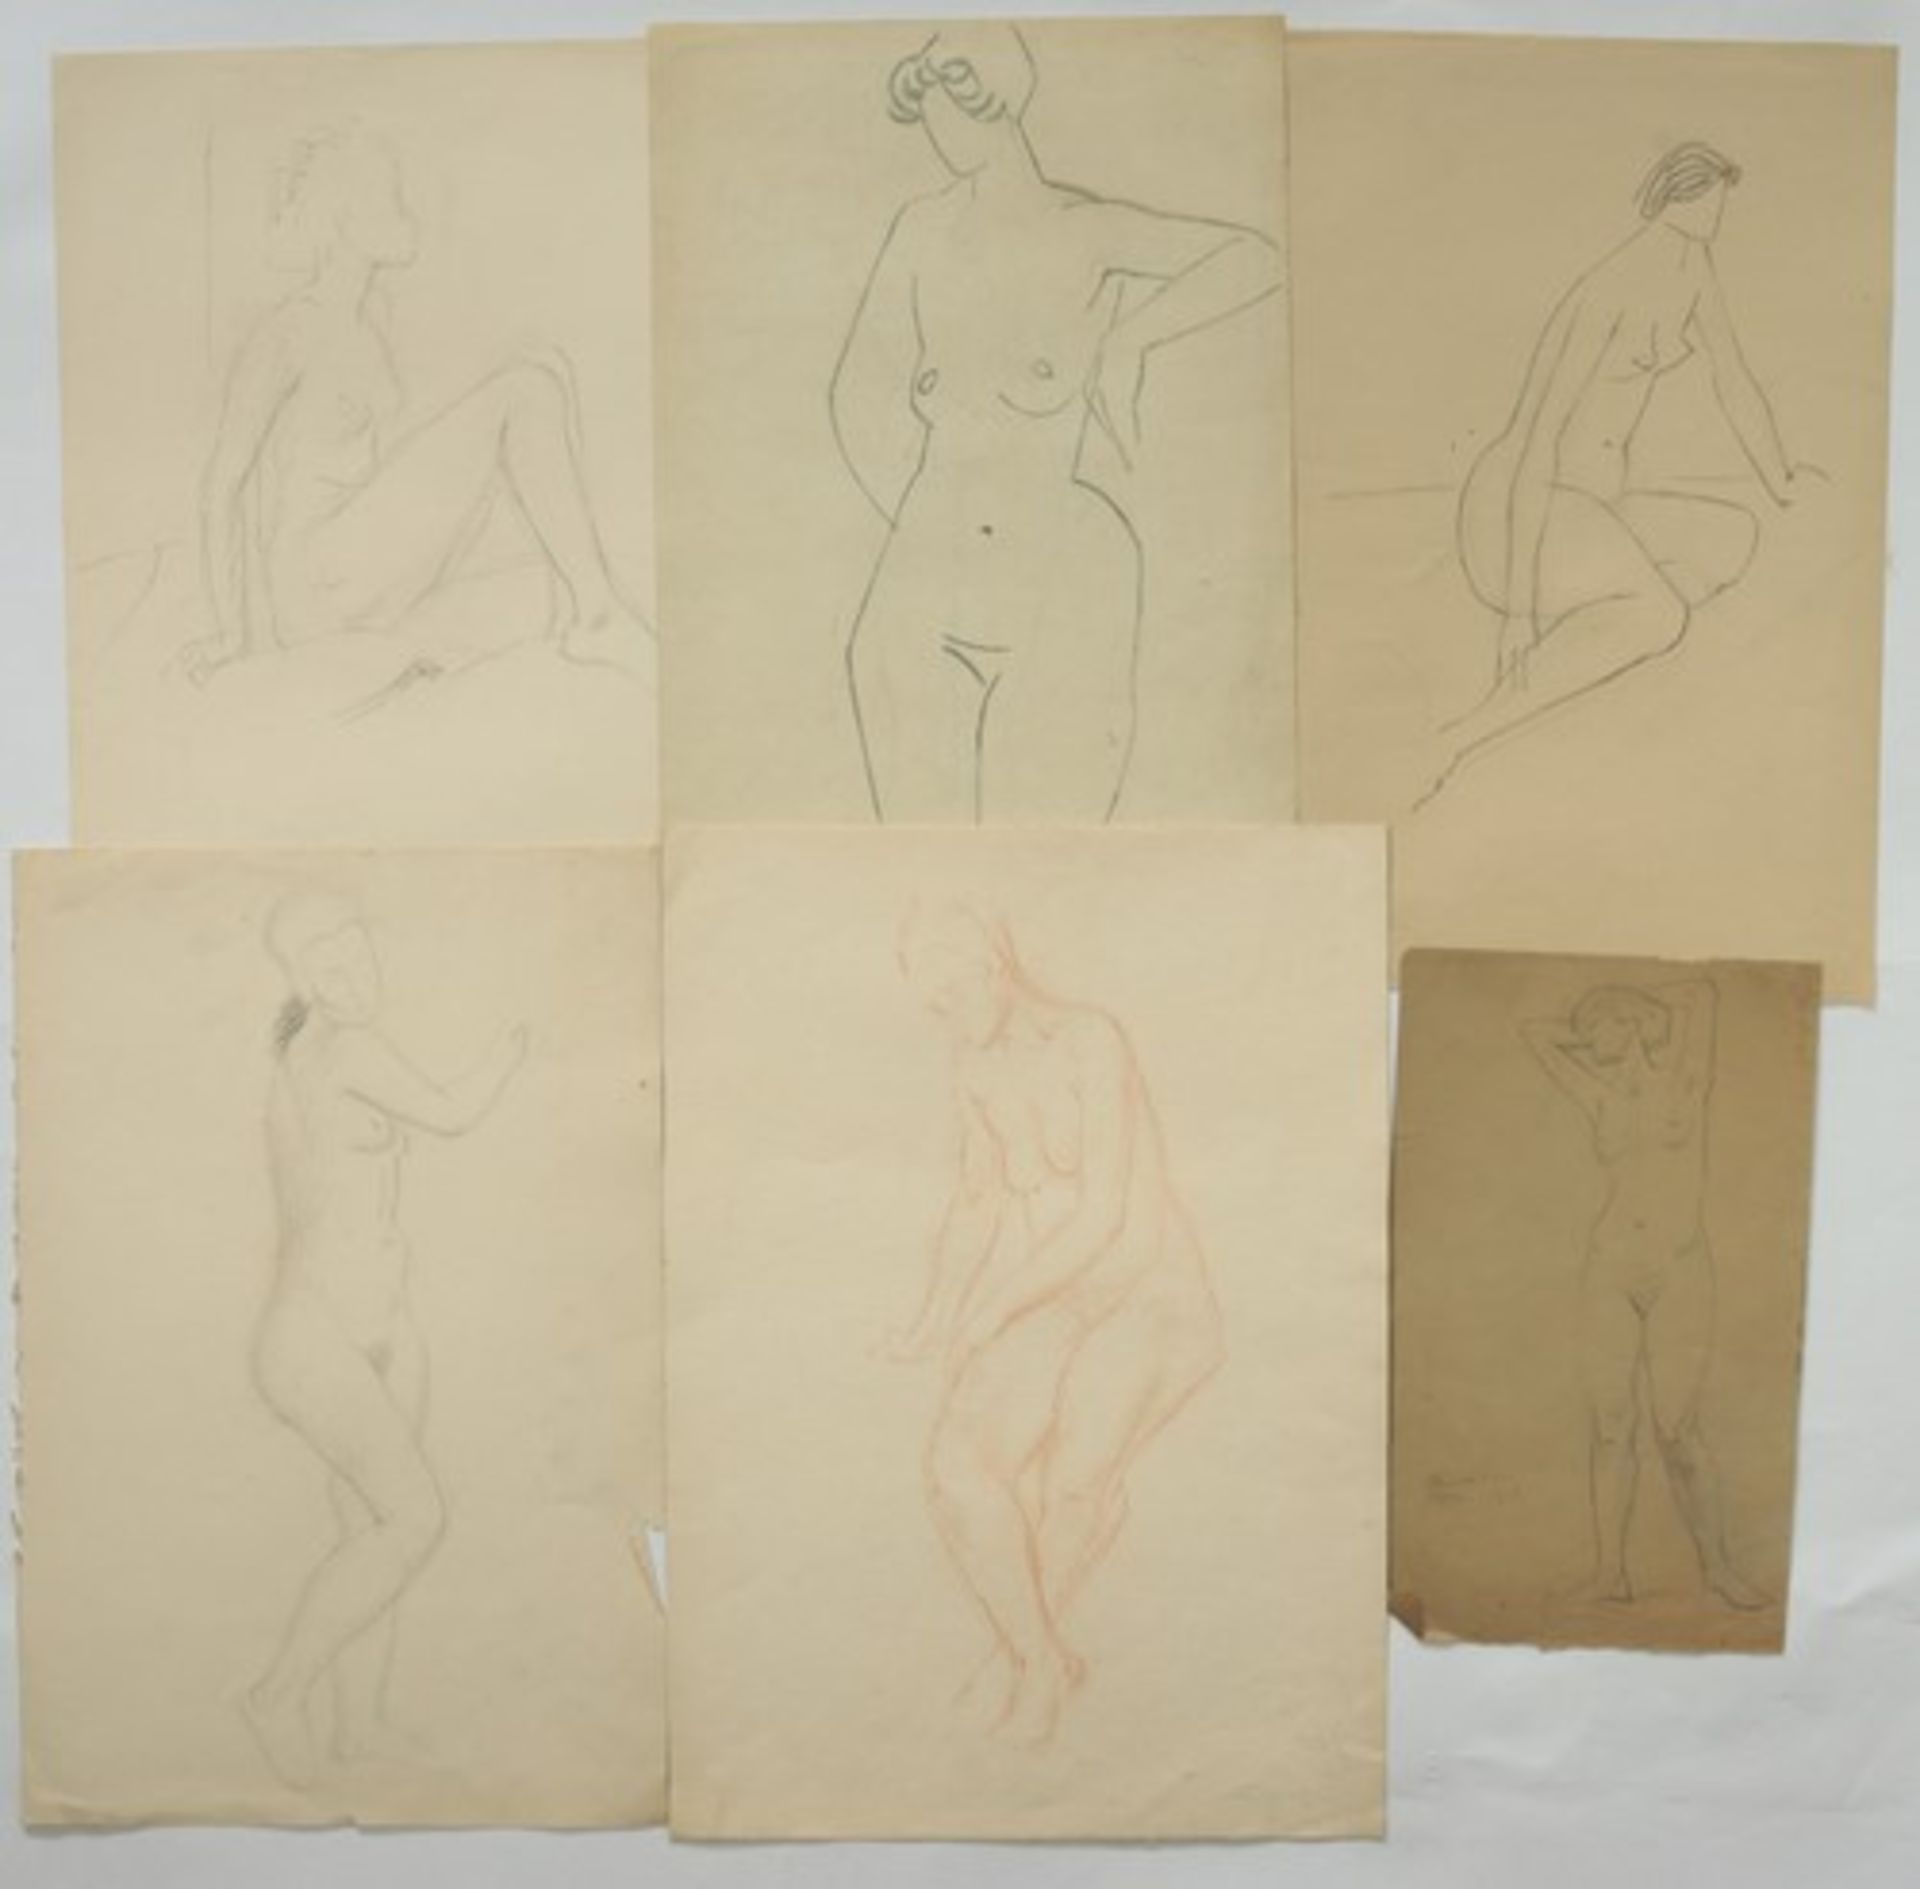 Hemmerlein, Karl15 Zeichnungen, Kohle, Bleistift, Röthel, Skizzen/Studien, Frauenakte, 3x sign., - Bild 2 aus 3